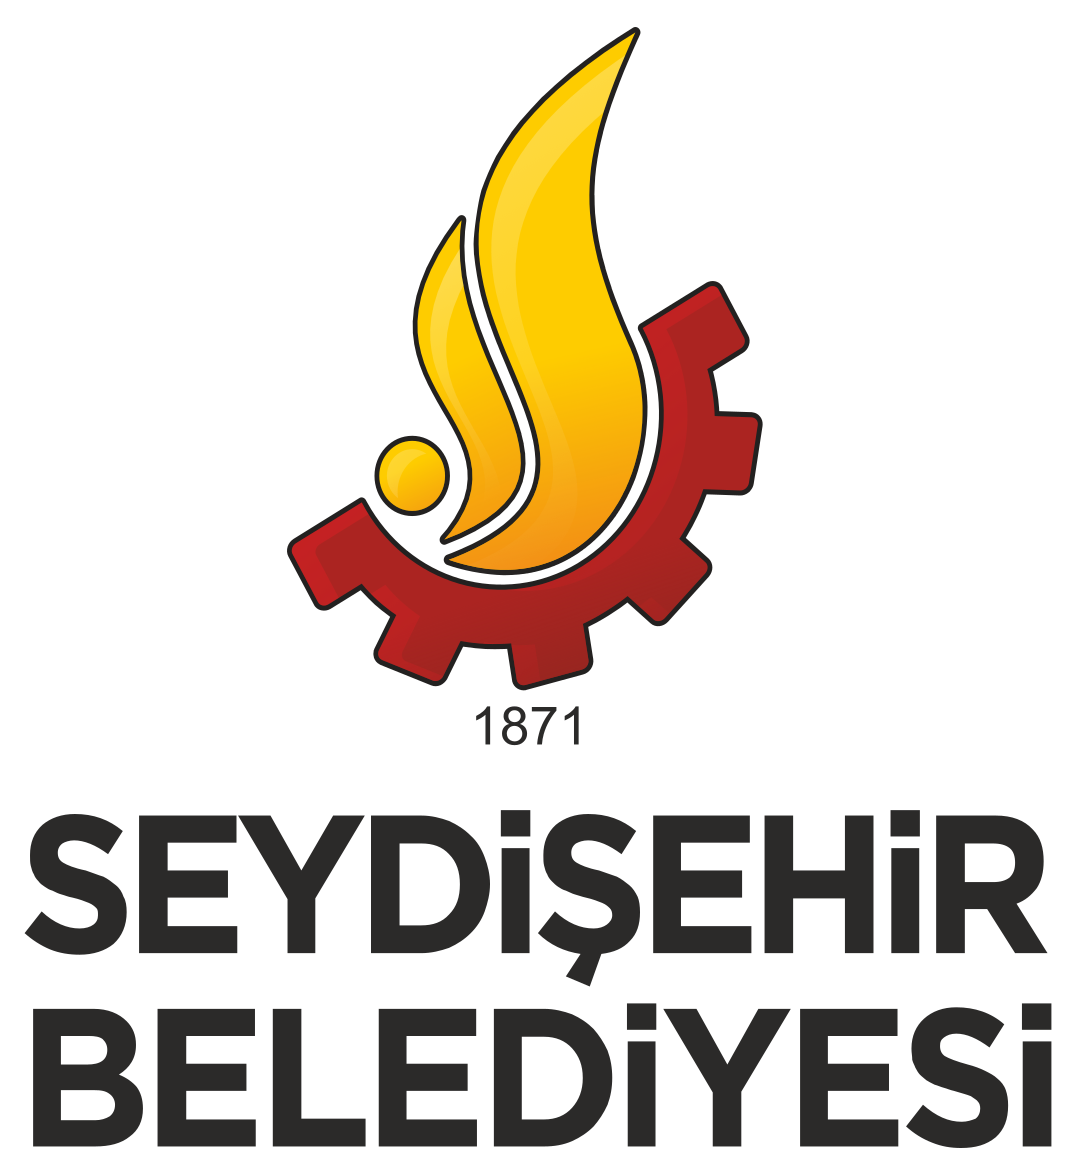 Seydişehir Belediyesi